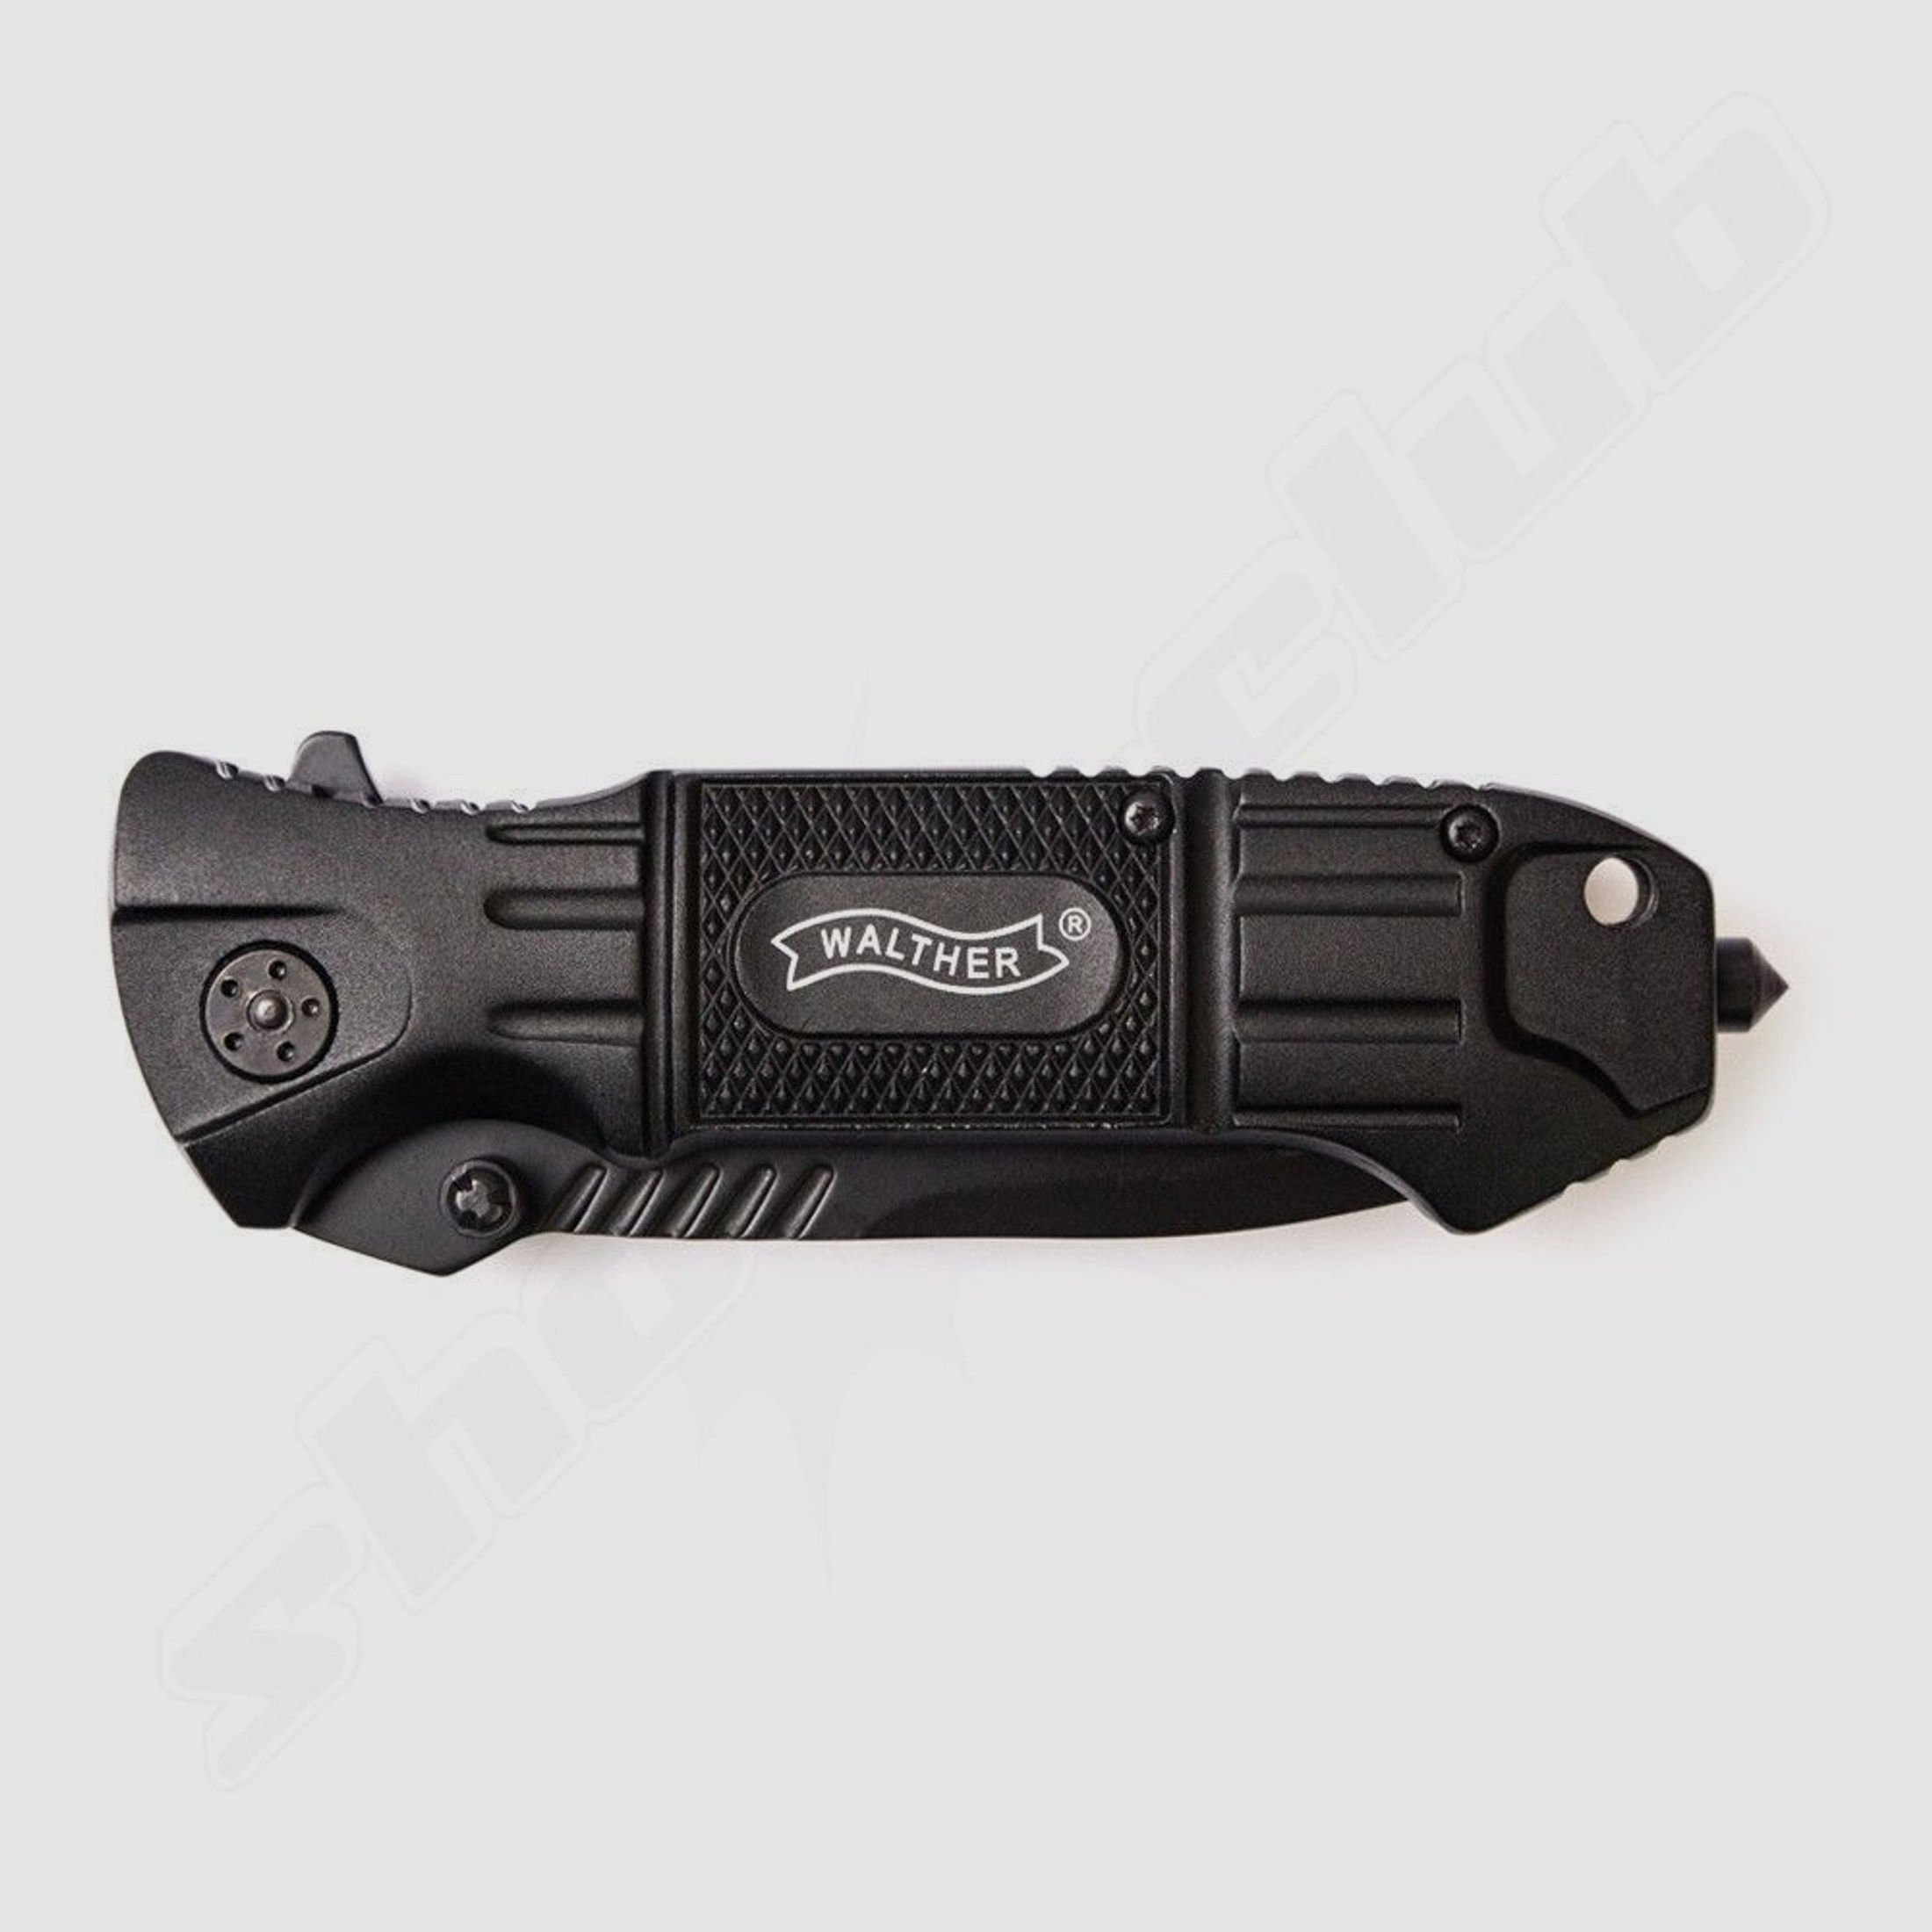 Walther BTK Black Tac Knife - Einhandmesser mit Holster